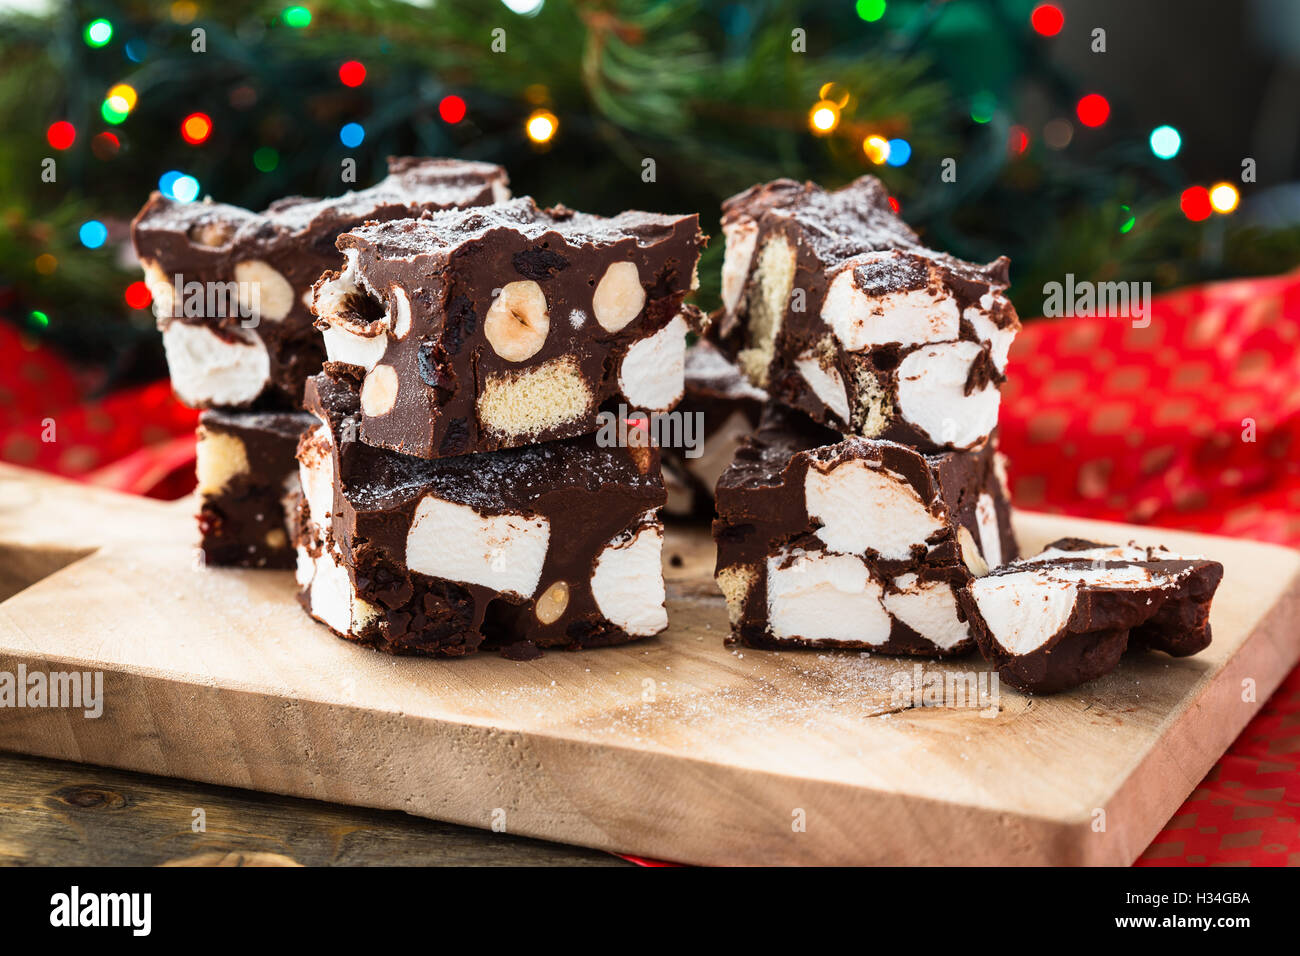 Steiniger Weg Crunch Bars, Weihnachten Dessert mit Schokolade, Eibisch, Haselnuss, Keks und glace Kirschen Stockfoto